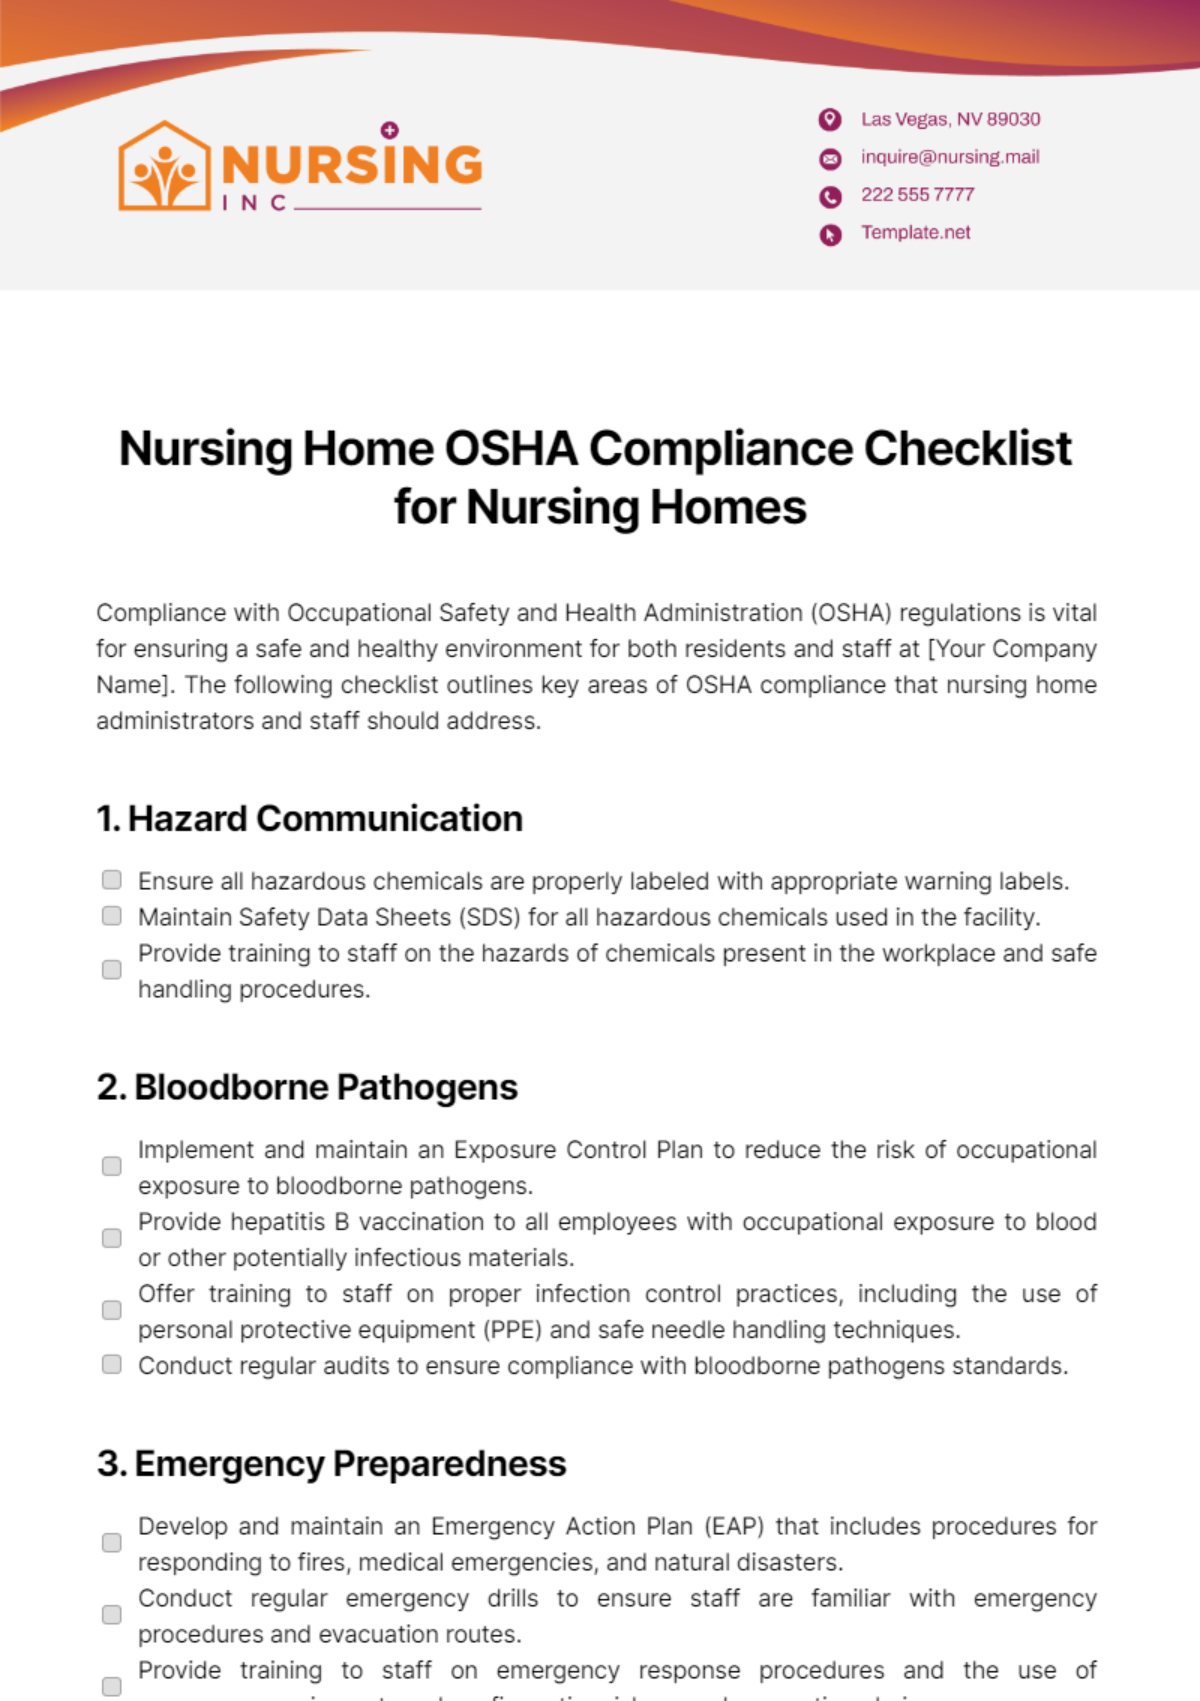 Nursing Home OSHA Compliance Checklist for Nursing Homes Template